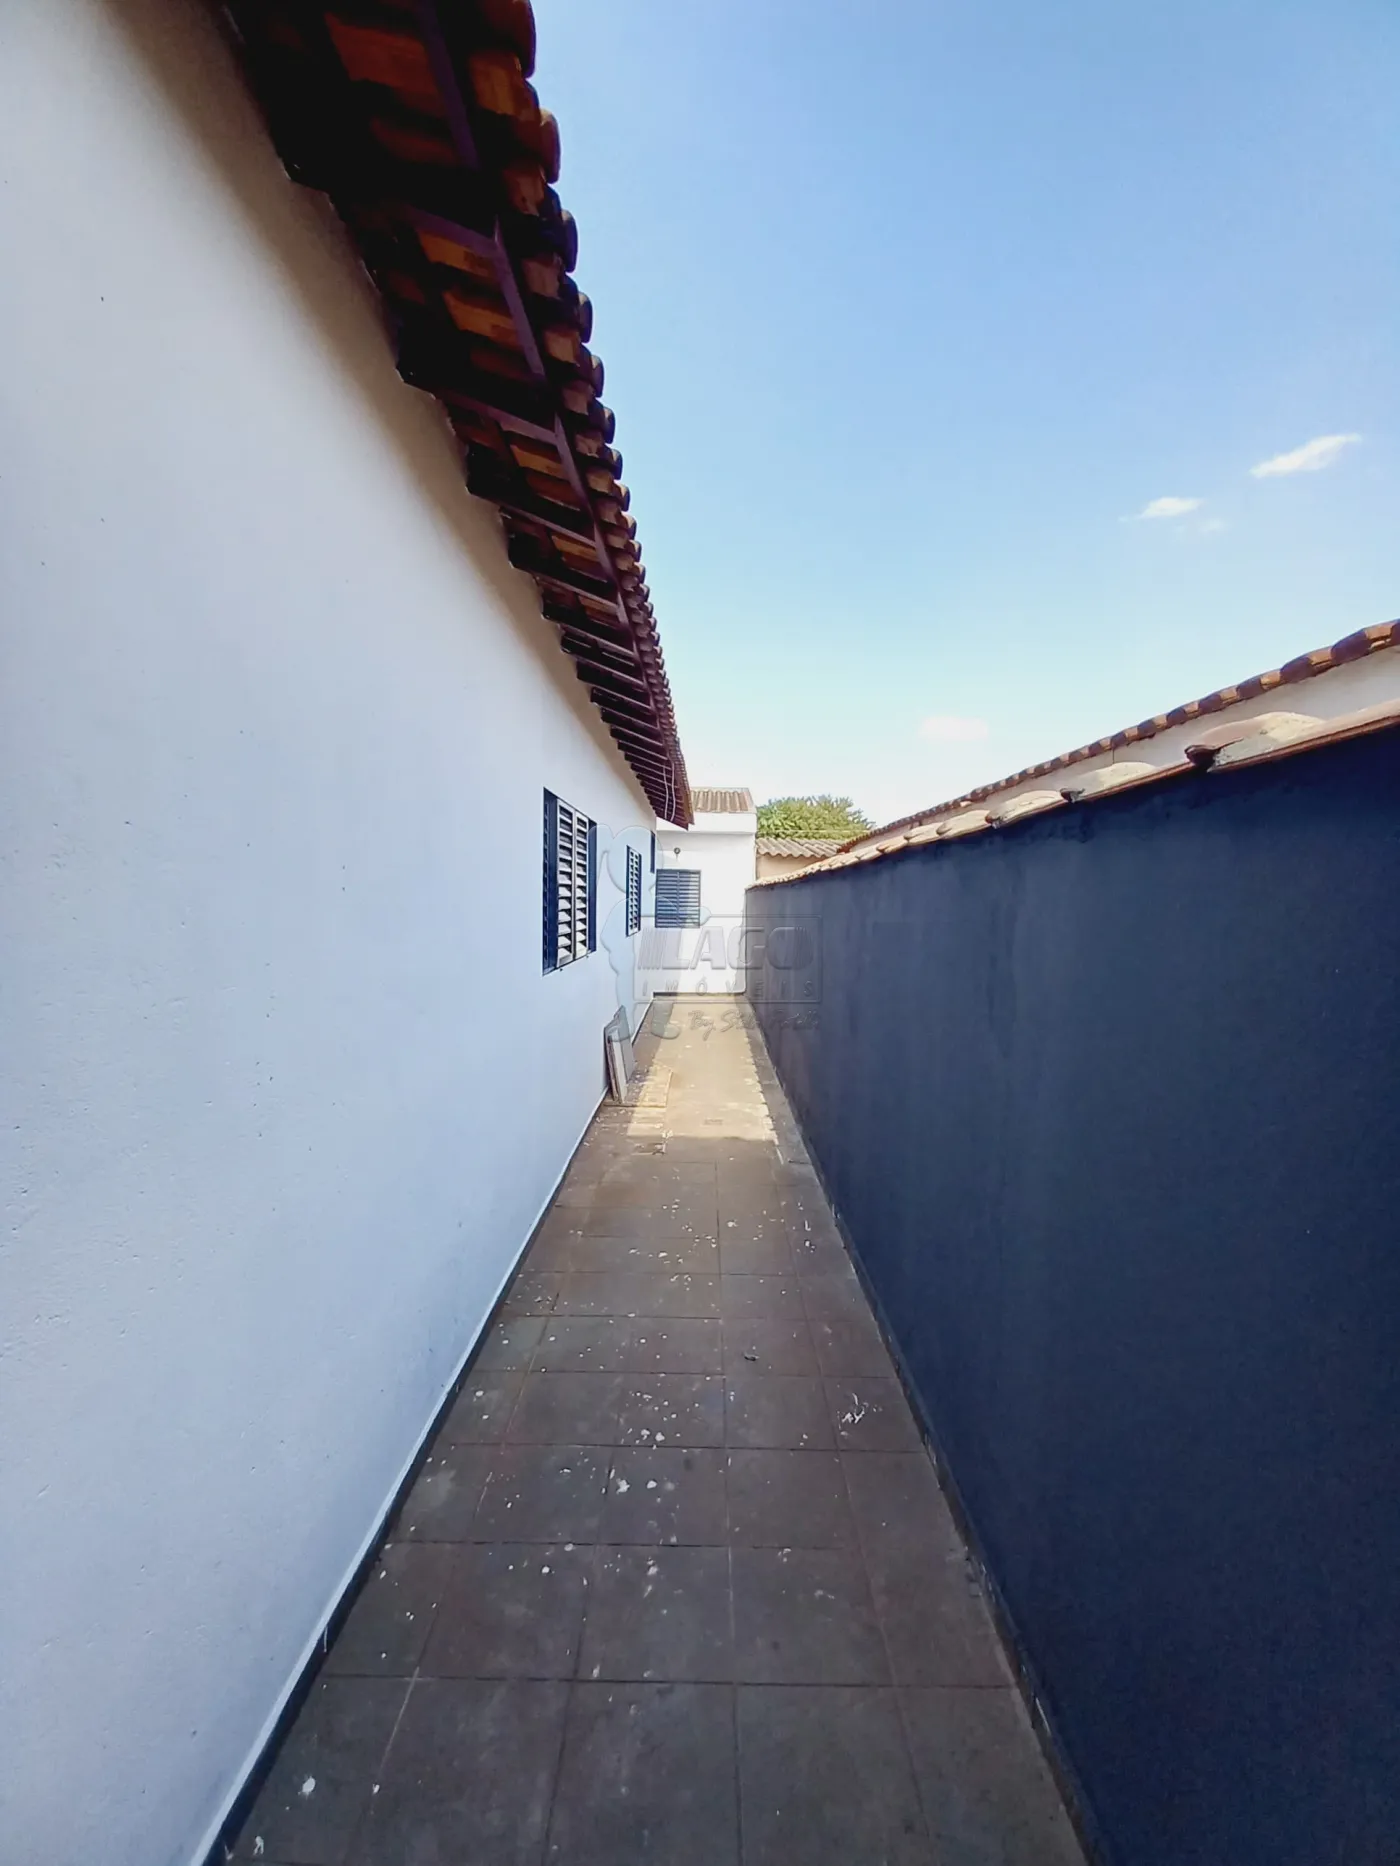 Comprar Casa / Padrão em Ribeirão Preto R$ 275.000,00 - Foto 19